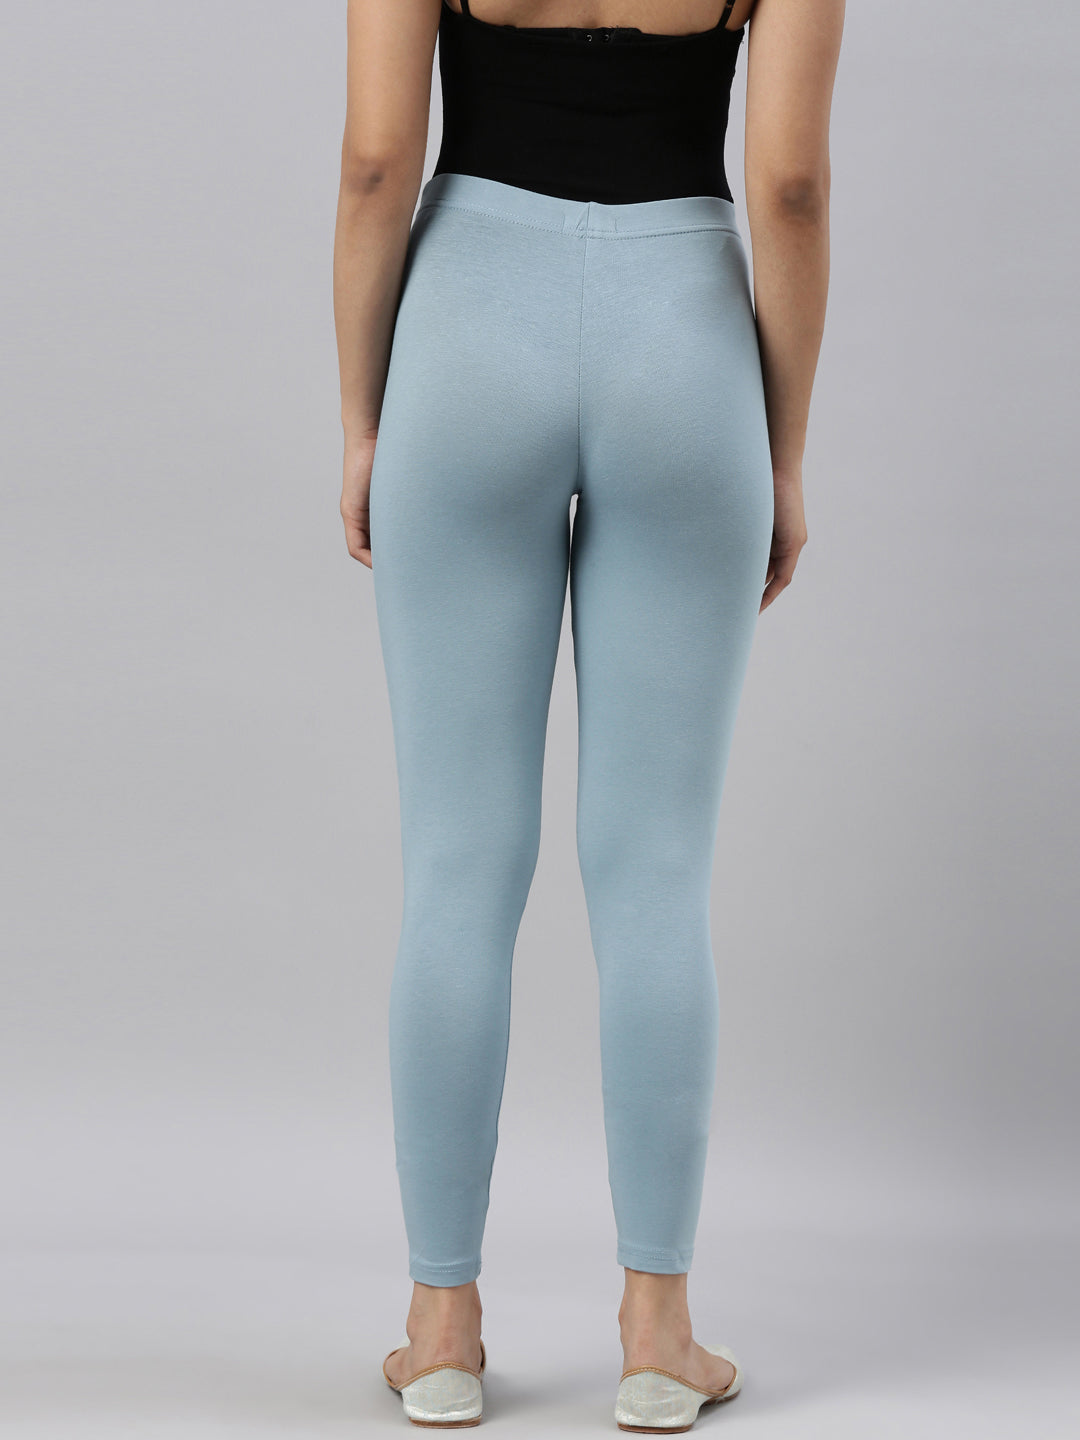 Ada- Light Blue – Not Only Pants